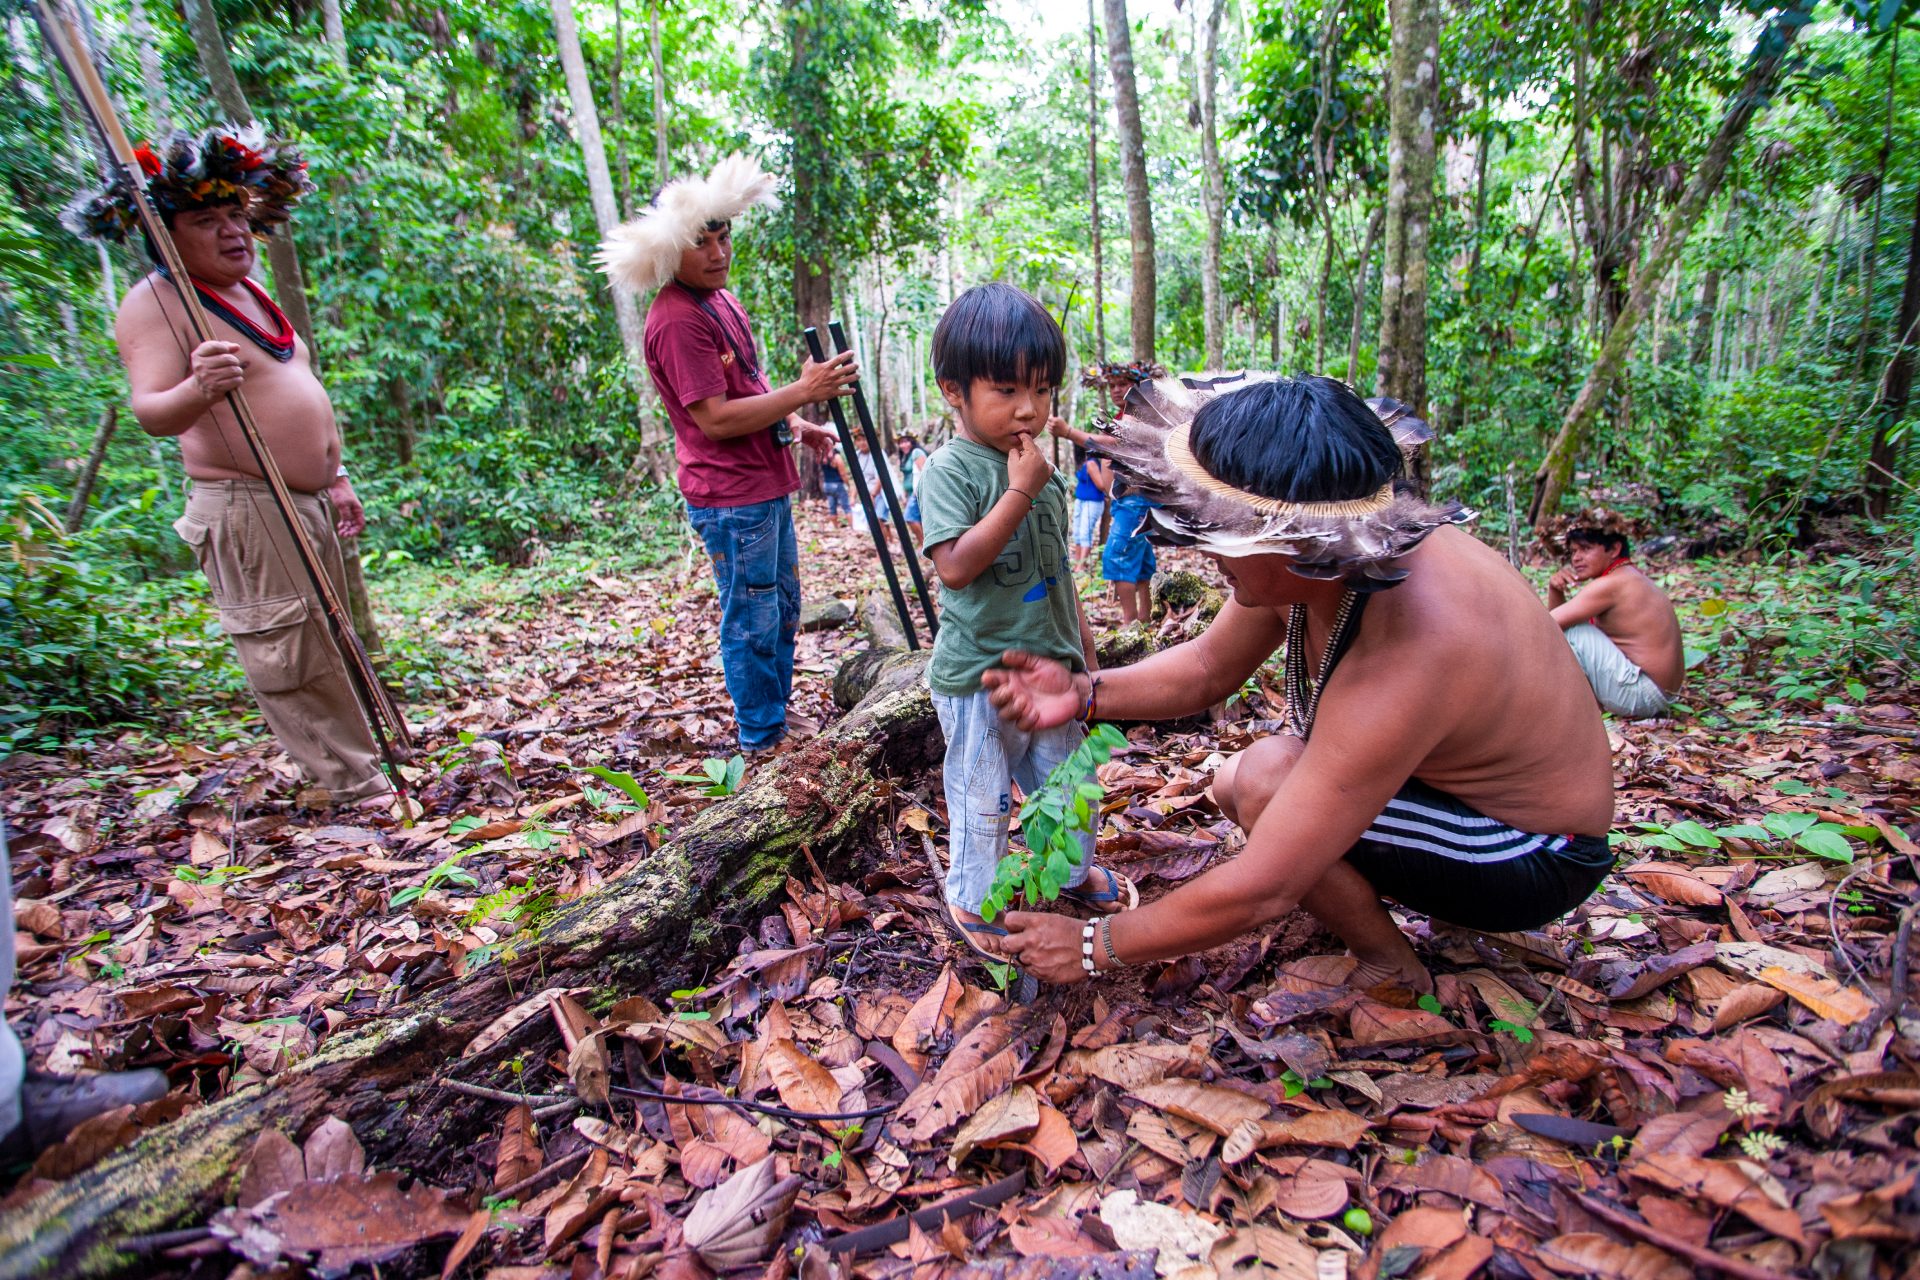 #6: Große Verbesserung bei der Abholzung des Amazonas